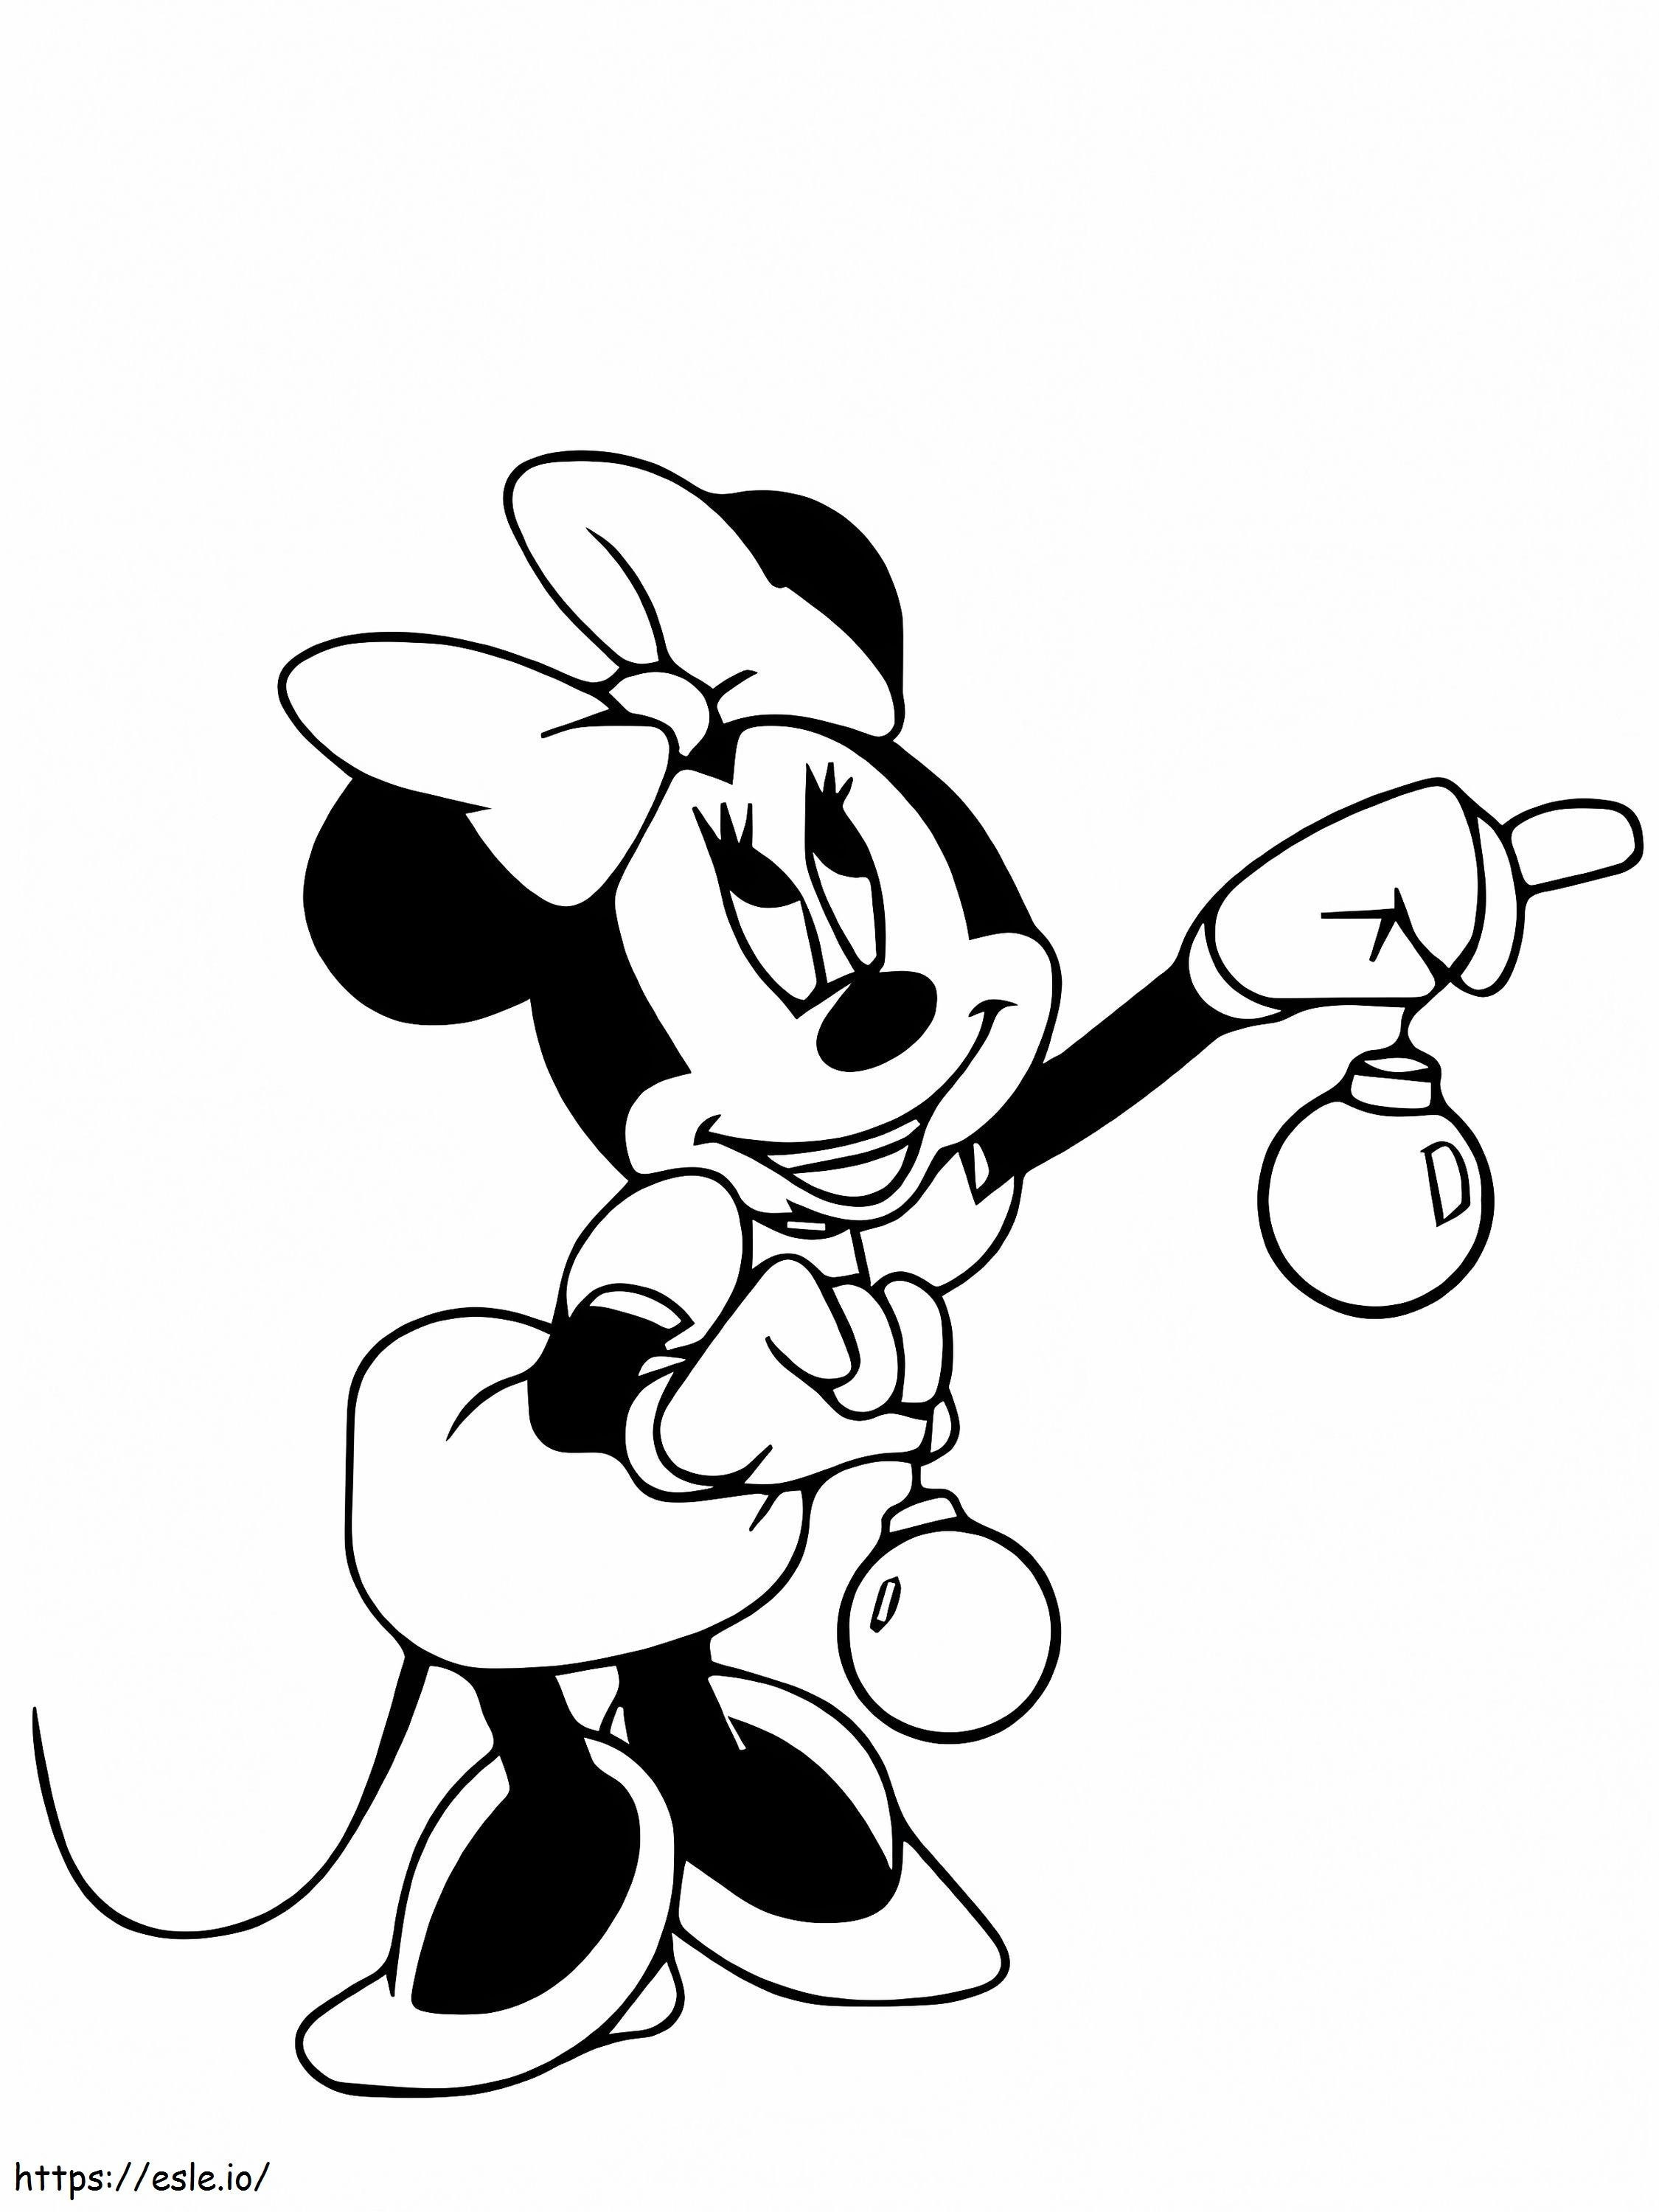 Página para colorir de Natal do Mickey Mouse para colorir